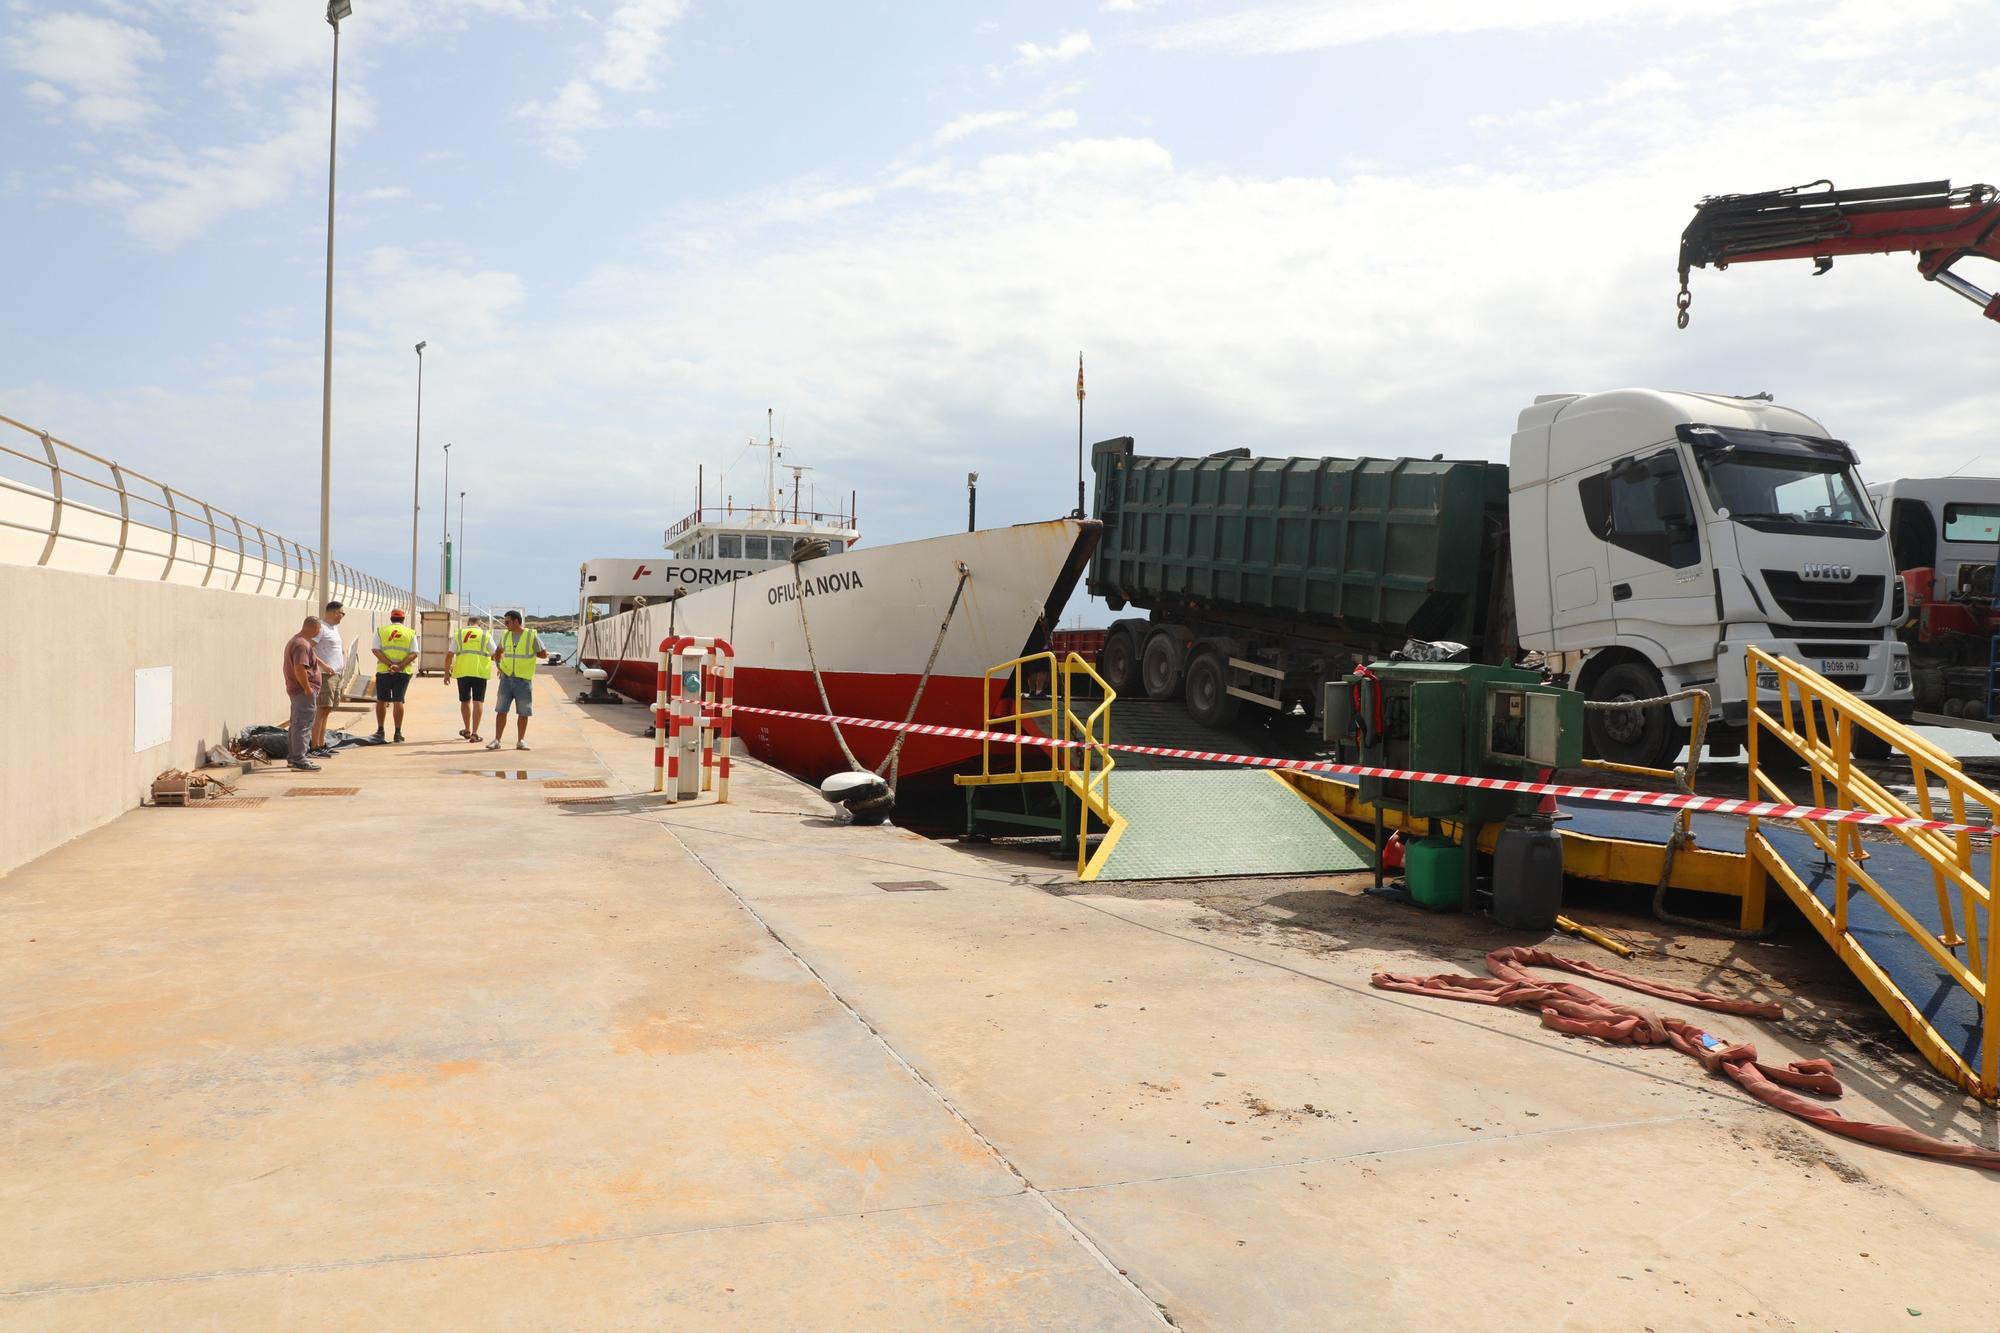 Cerrado el puerto de Formentera al tráfico rodado